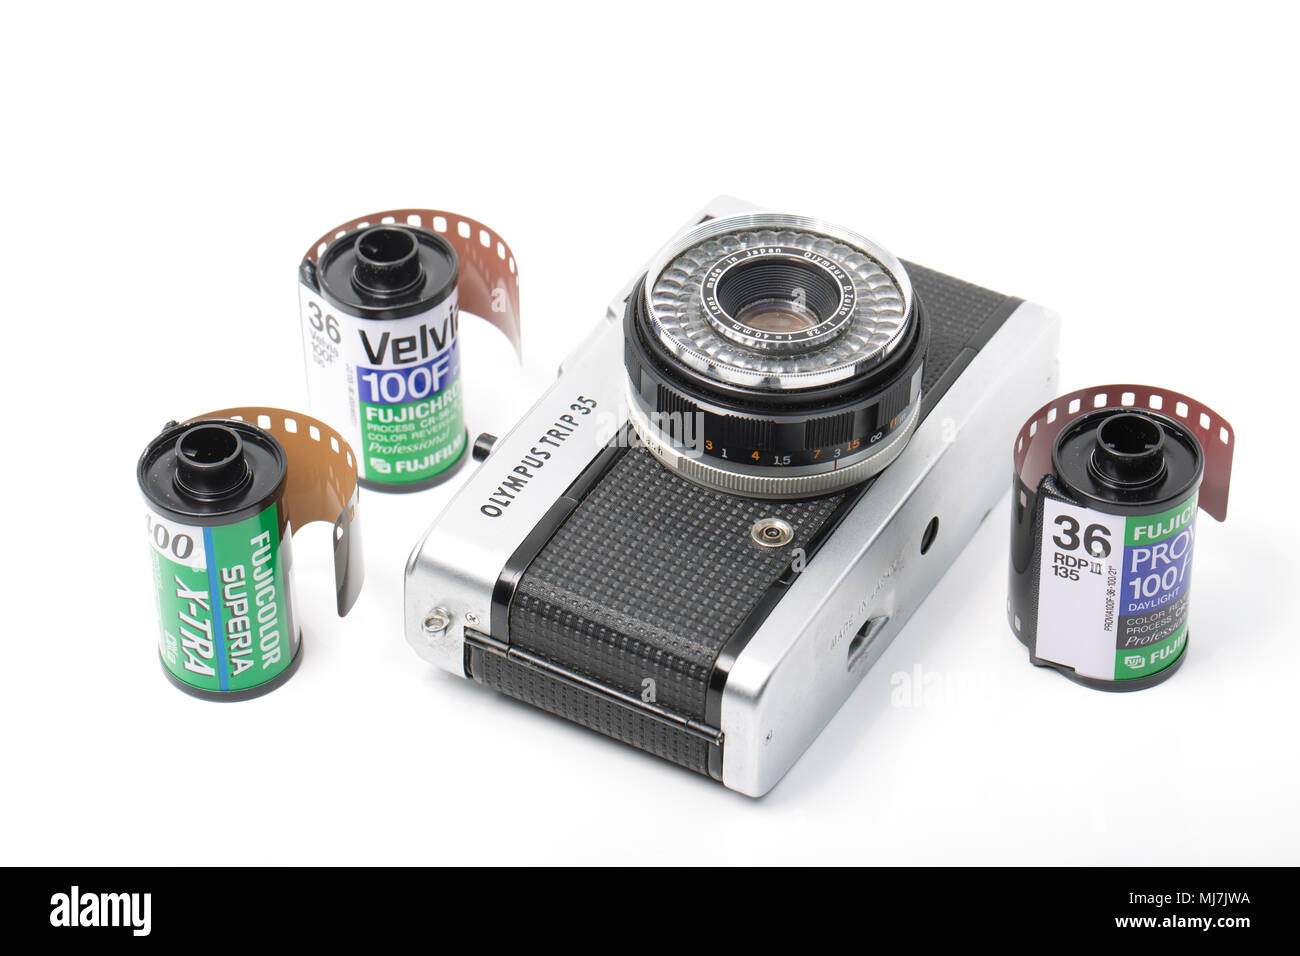 Un gruppo di lavoro di viaggio Olympus 35 telecamera cinematografica acquistato per £ 1 dal labirinto in vendita in Dorset England Regno Unito. Produzione di telecamera correva da 1967-1984 e fu fitt Foto Stock